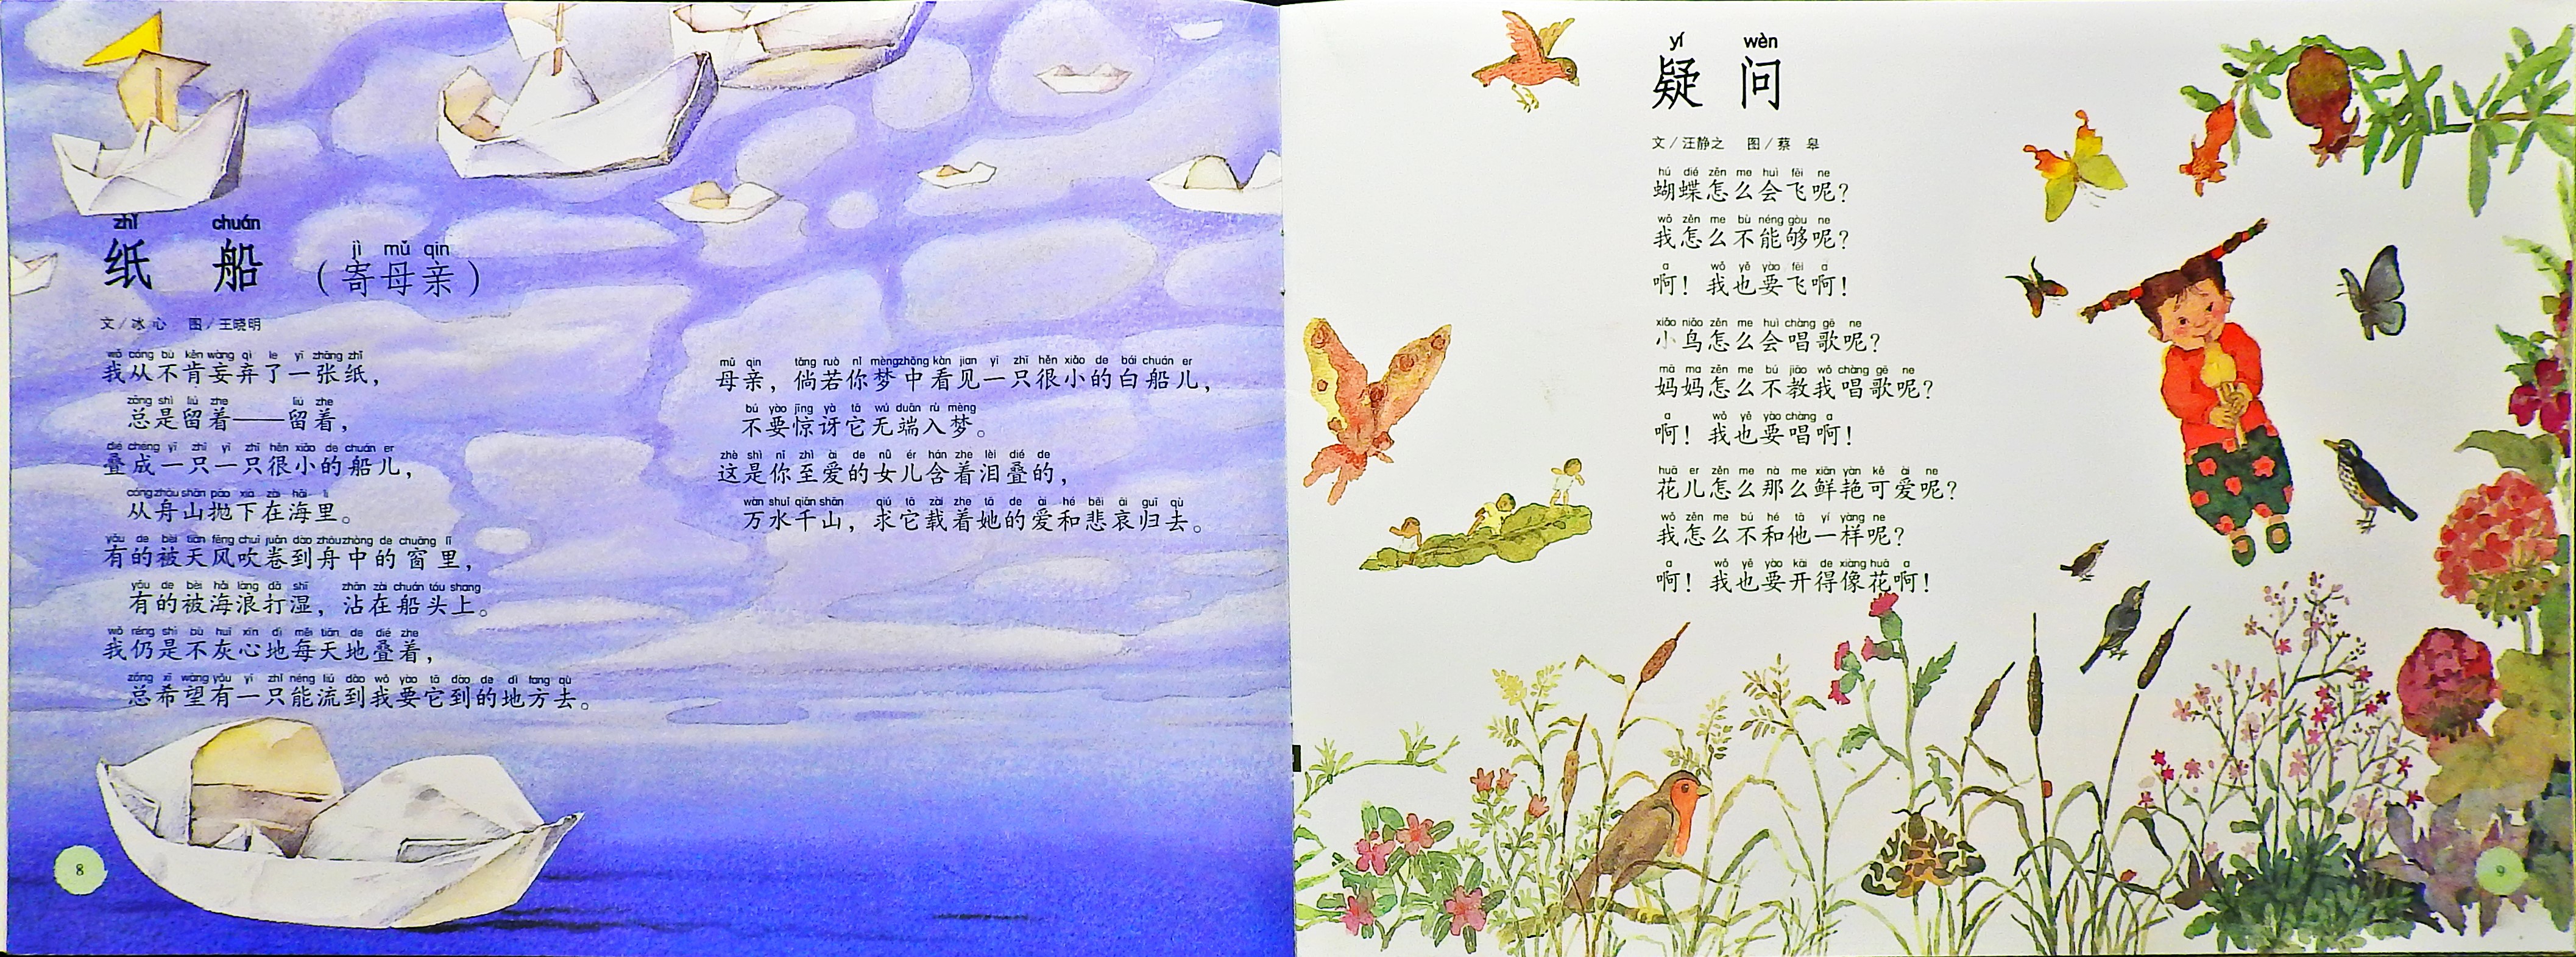 蝴蝶·豌豆花 (06),绘本,绘本故事,绘本阅读,故事书,童书,图画书,课外阅读